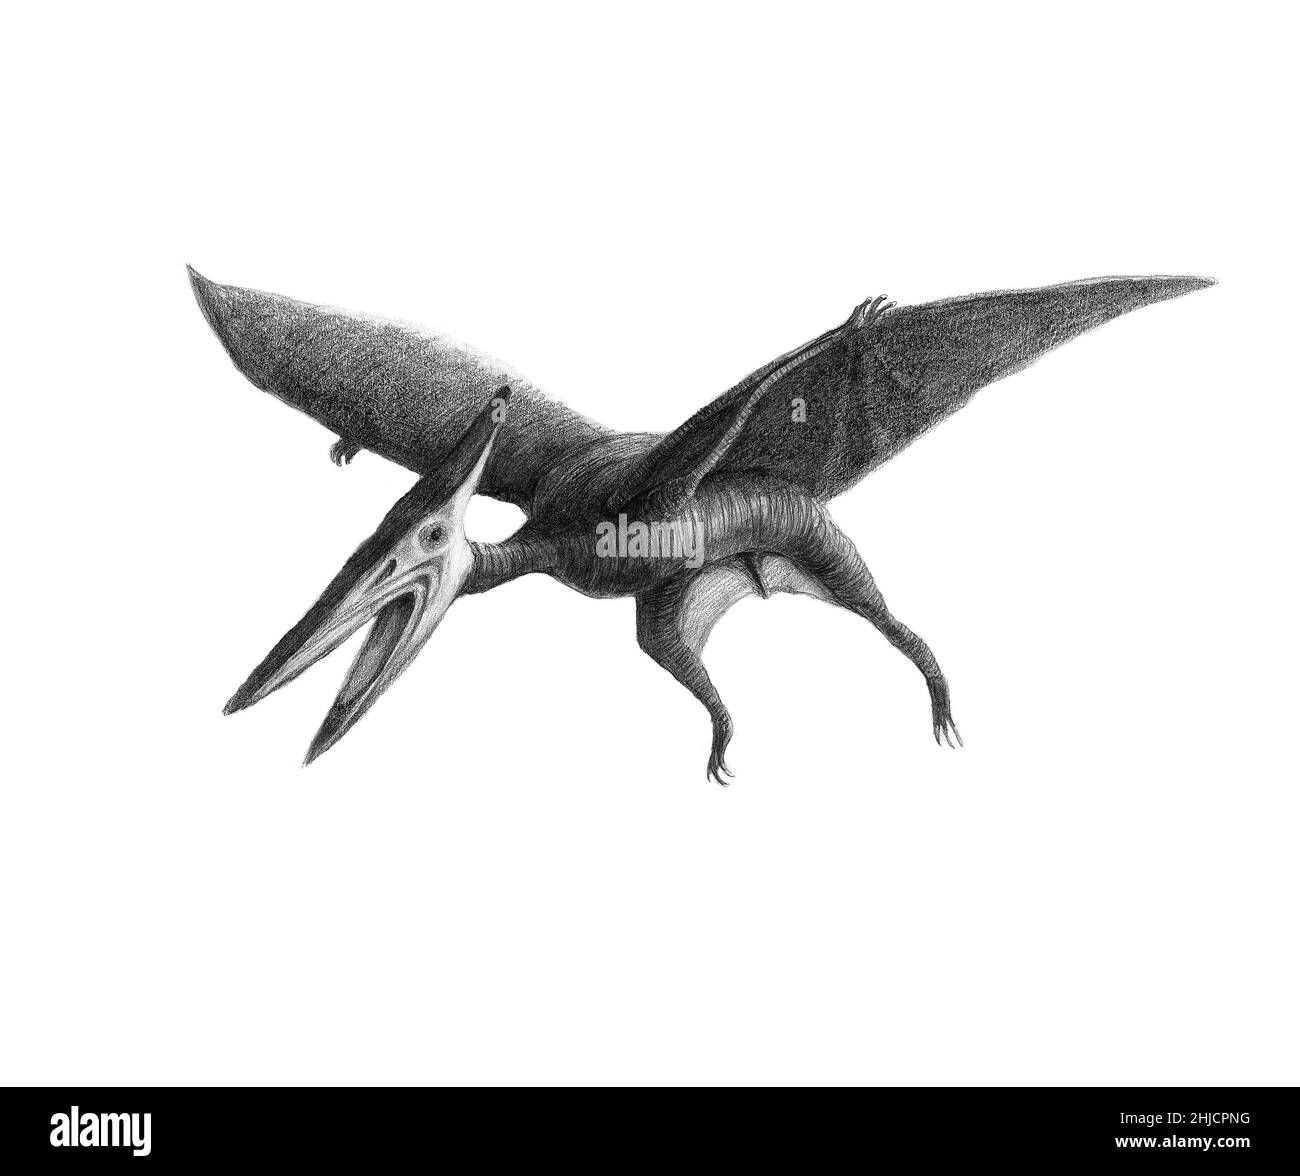 Pteranodon pterosaur (auch Pterodactyl), Kunstwerk. Pteranodon war ein fliegendes Reptil, das während der späten Kreidezeit, zwischen 85 und 75 Millionen Jahren, das heute Nordamerika und Europa bewohnt. Es war fleischfressend und ernährte sich wahrscheinlich von Fischen, die es in seiner zahnlosen Schnabel aus dem Wasser fing. Seine Spannweite könnte bis zu zehn Meter erreichen. Stockfoto